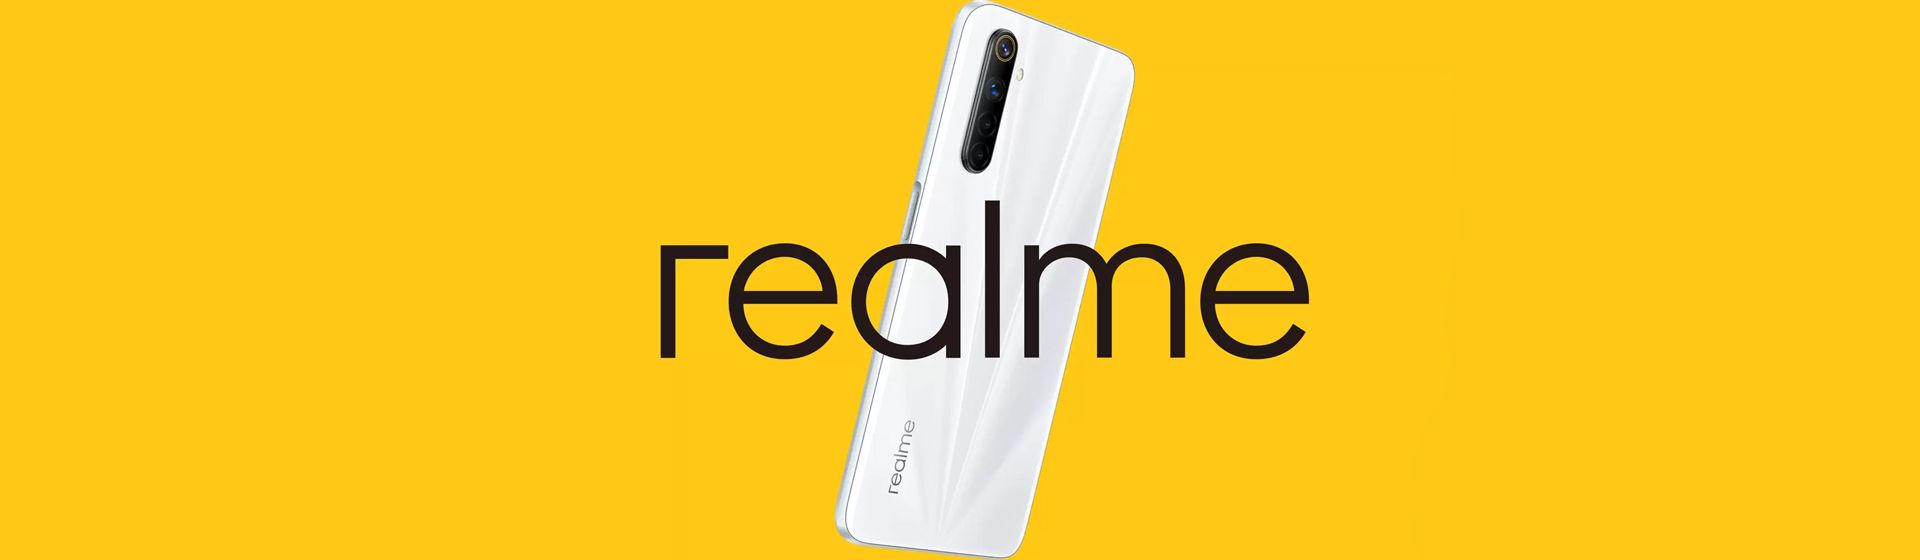 Capa do post: Realme confirma sua vinda para o Brasil com celulares e outros produtos